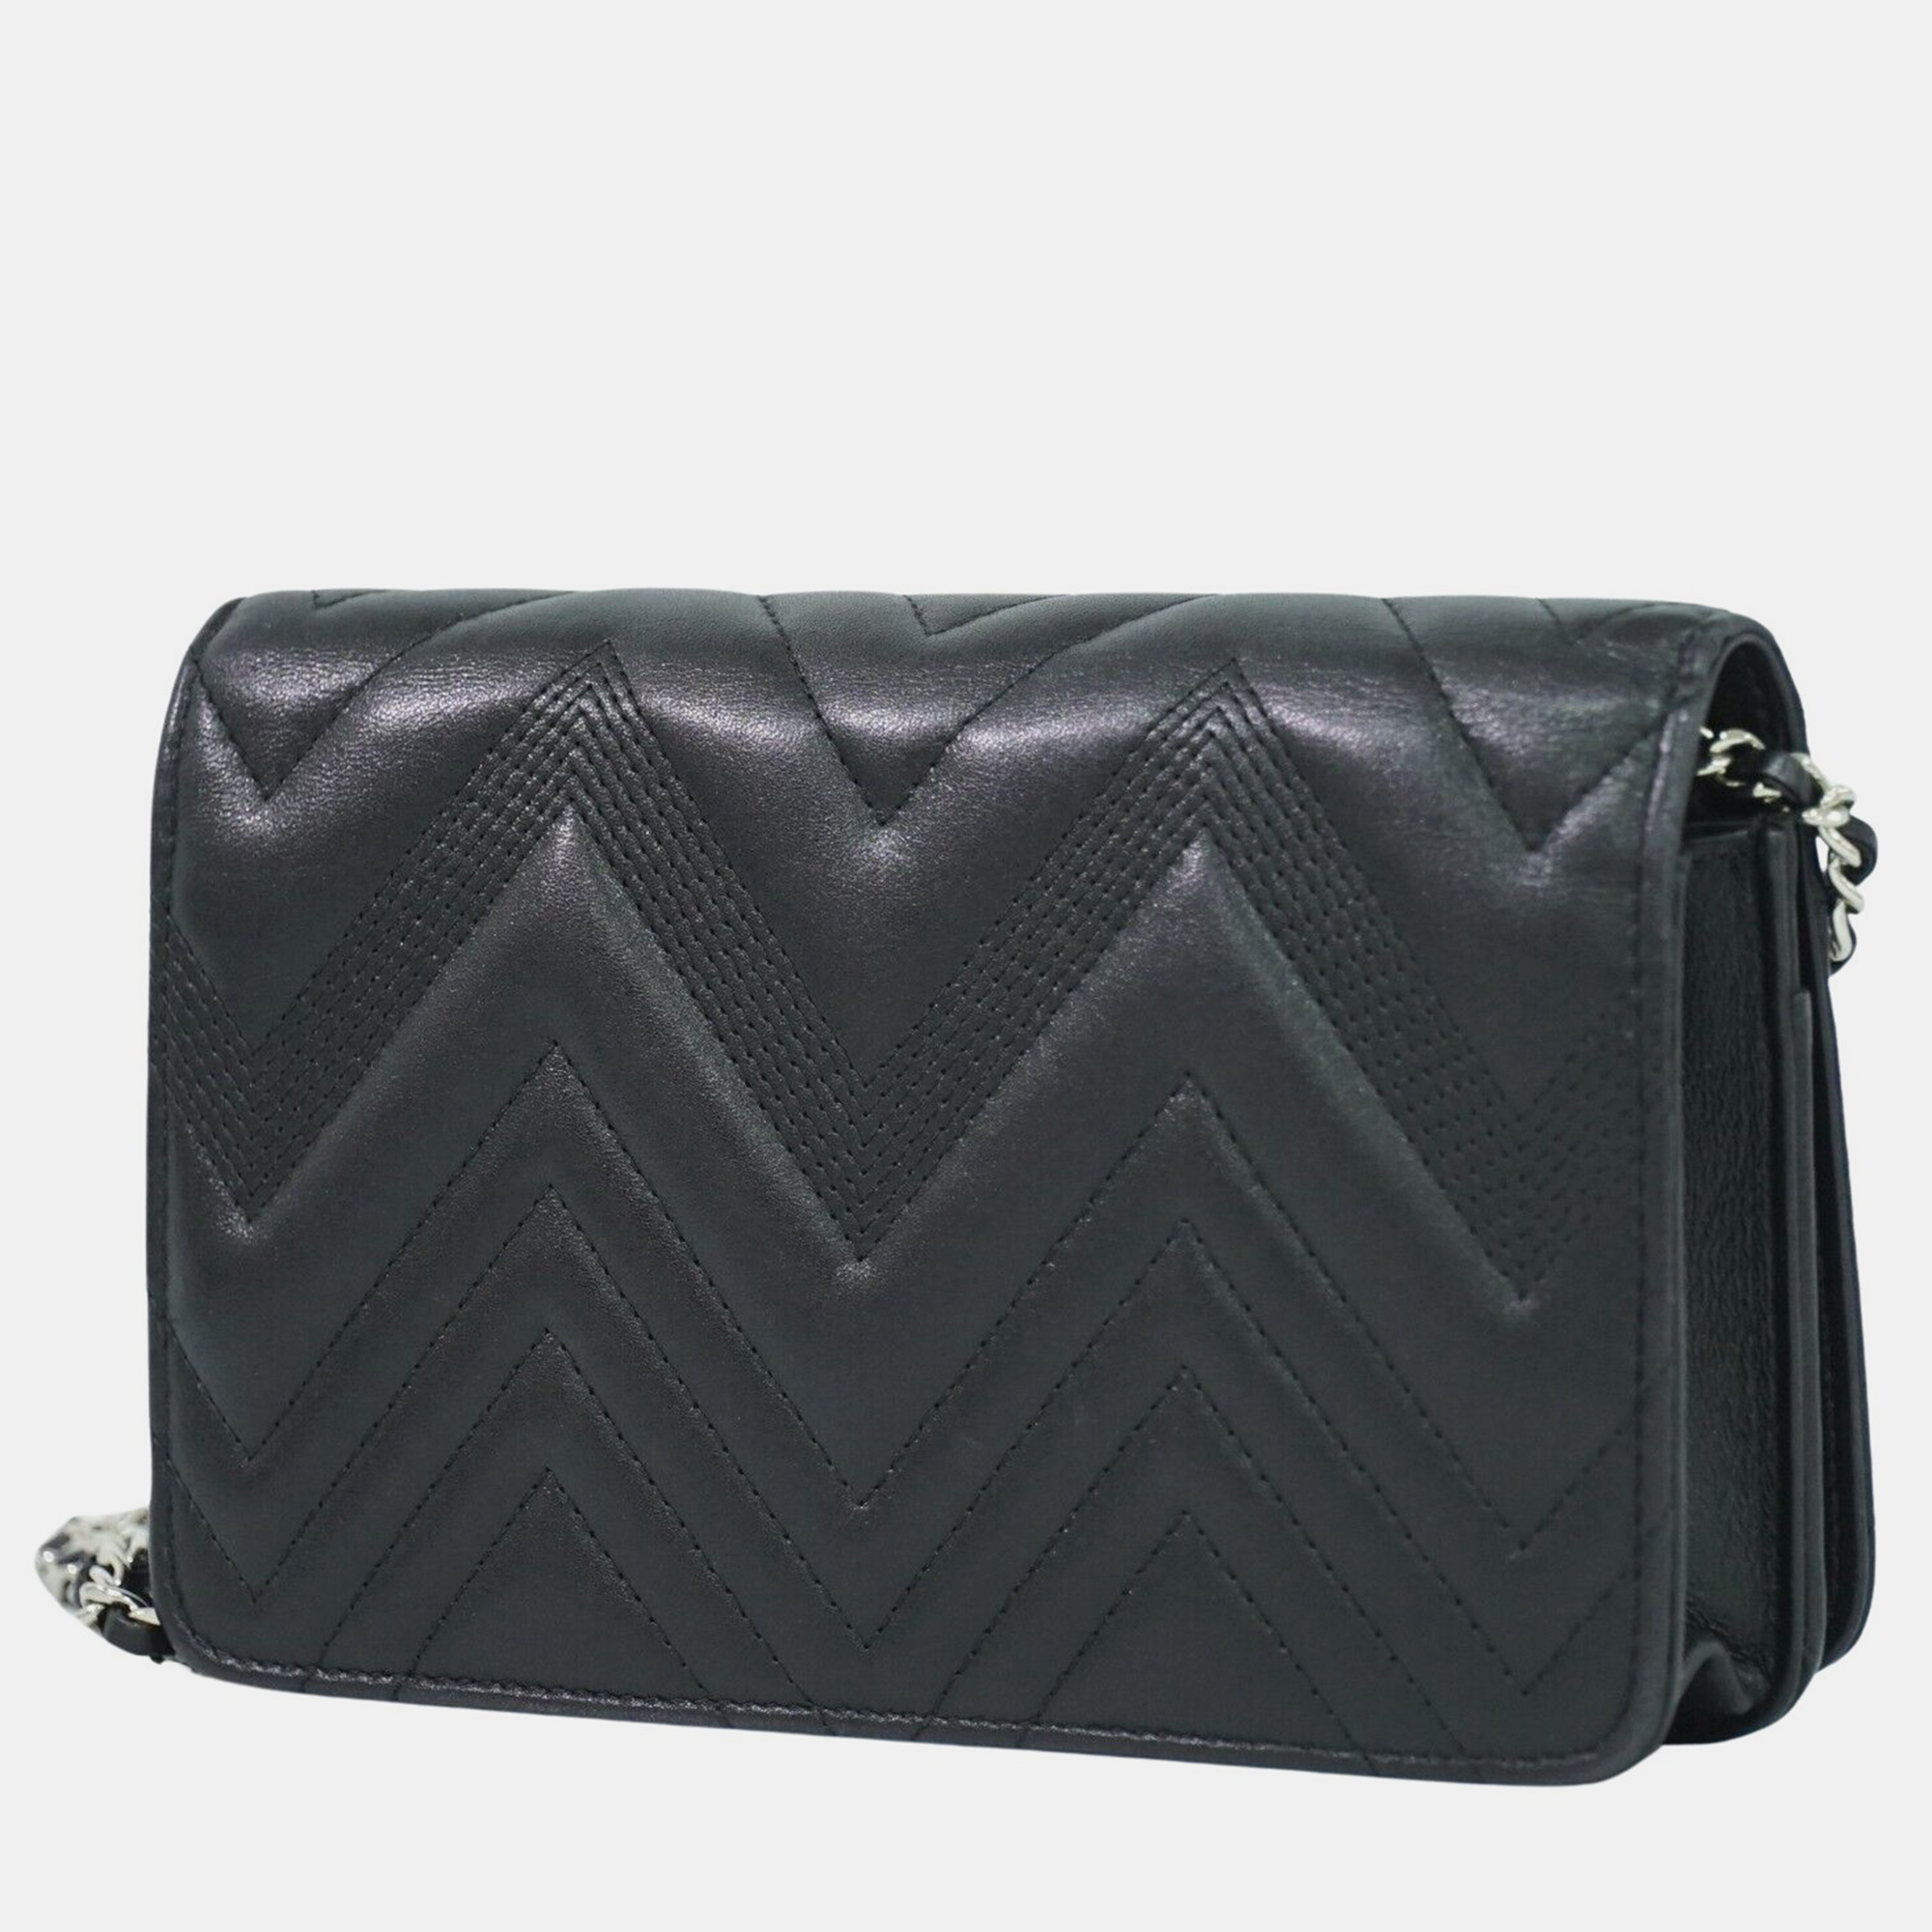 Chanel  black leather shoulder bag